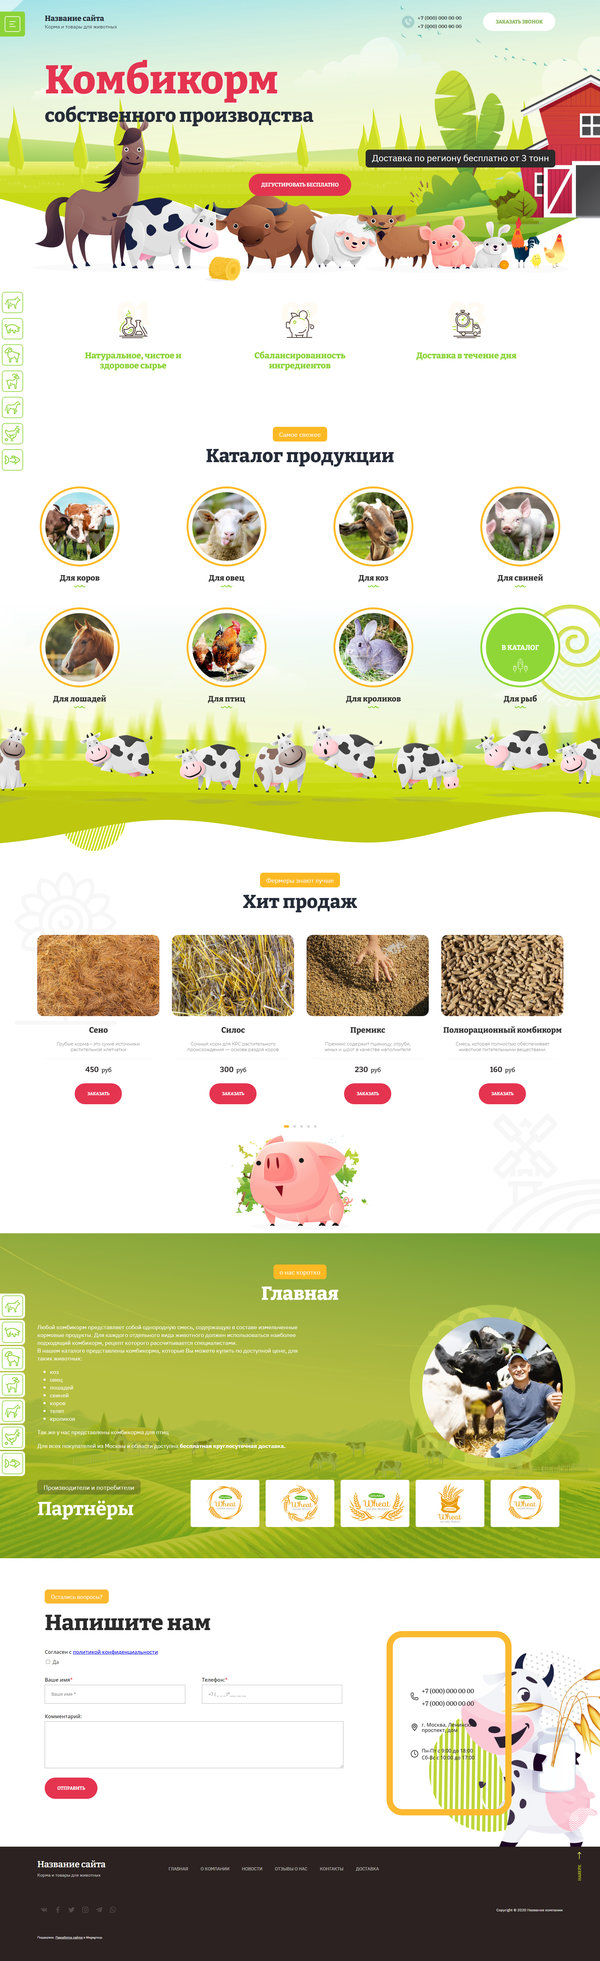 Готовый Сайт-Бизнес № 2819243 - Корма и продукты для животных (Десктопная версия)